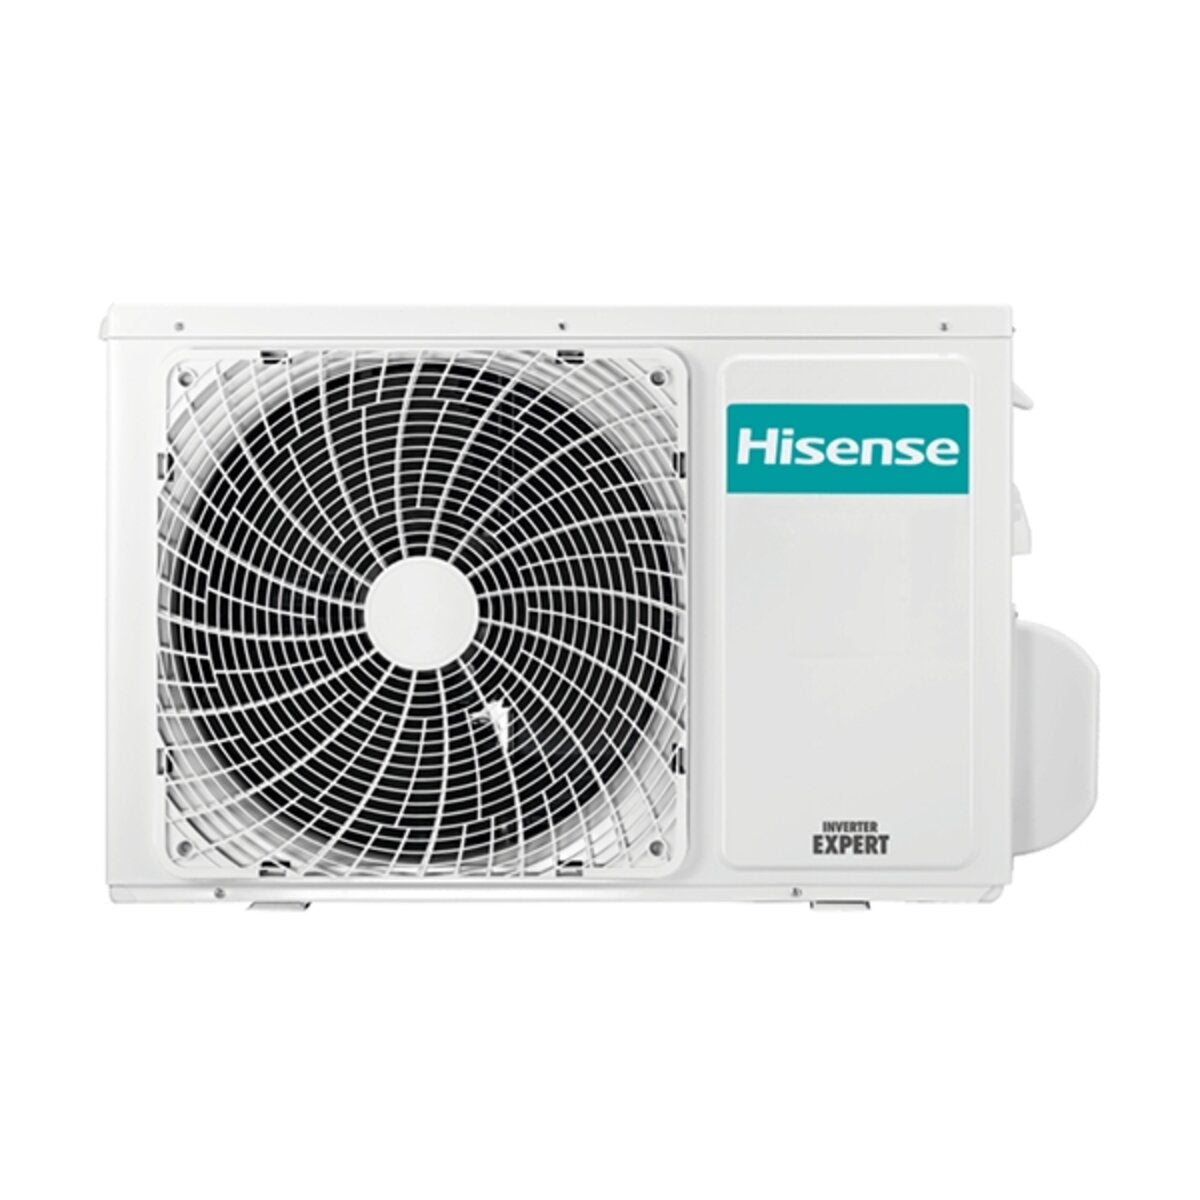 Hisense air conditioner Cassette ACT dual split 9000+12000 BTU inverter A++ outdoor unit 4.1 kW